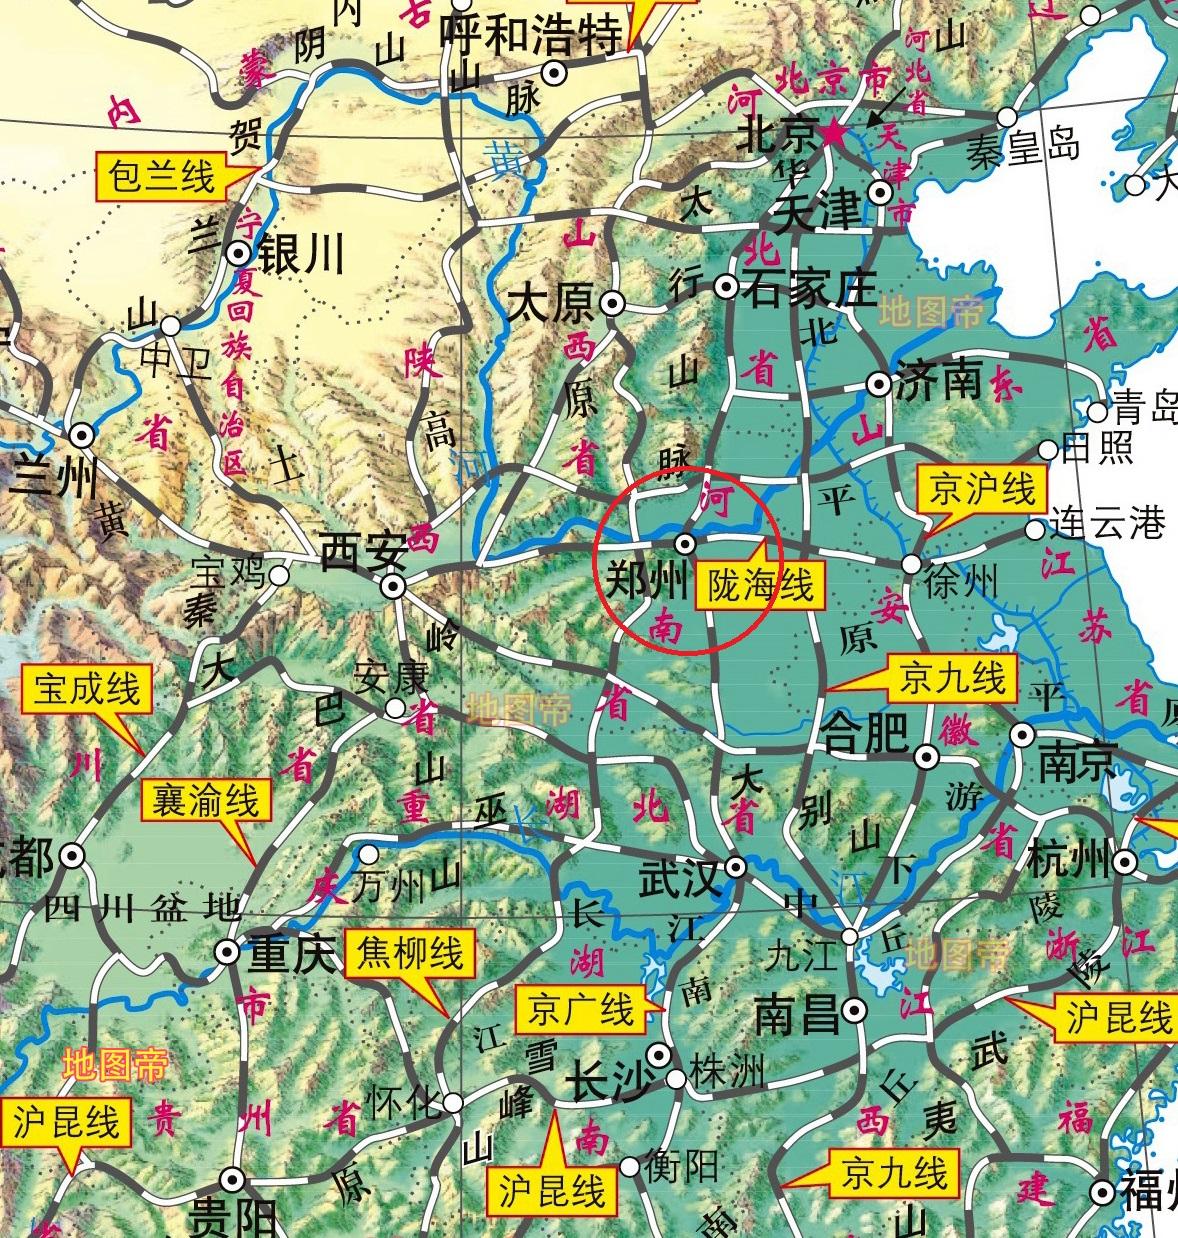 河南省地图,安徽与河南交界地图 - 伤感说说吧